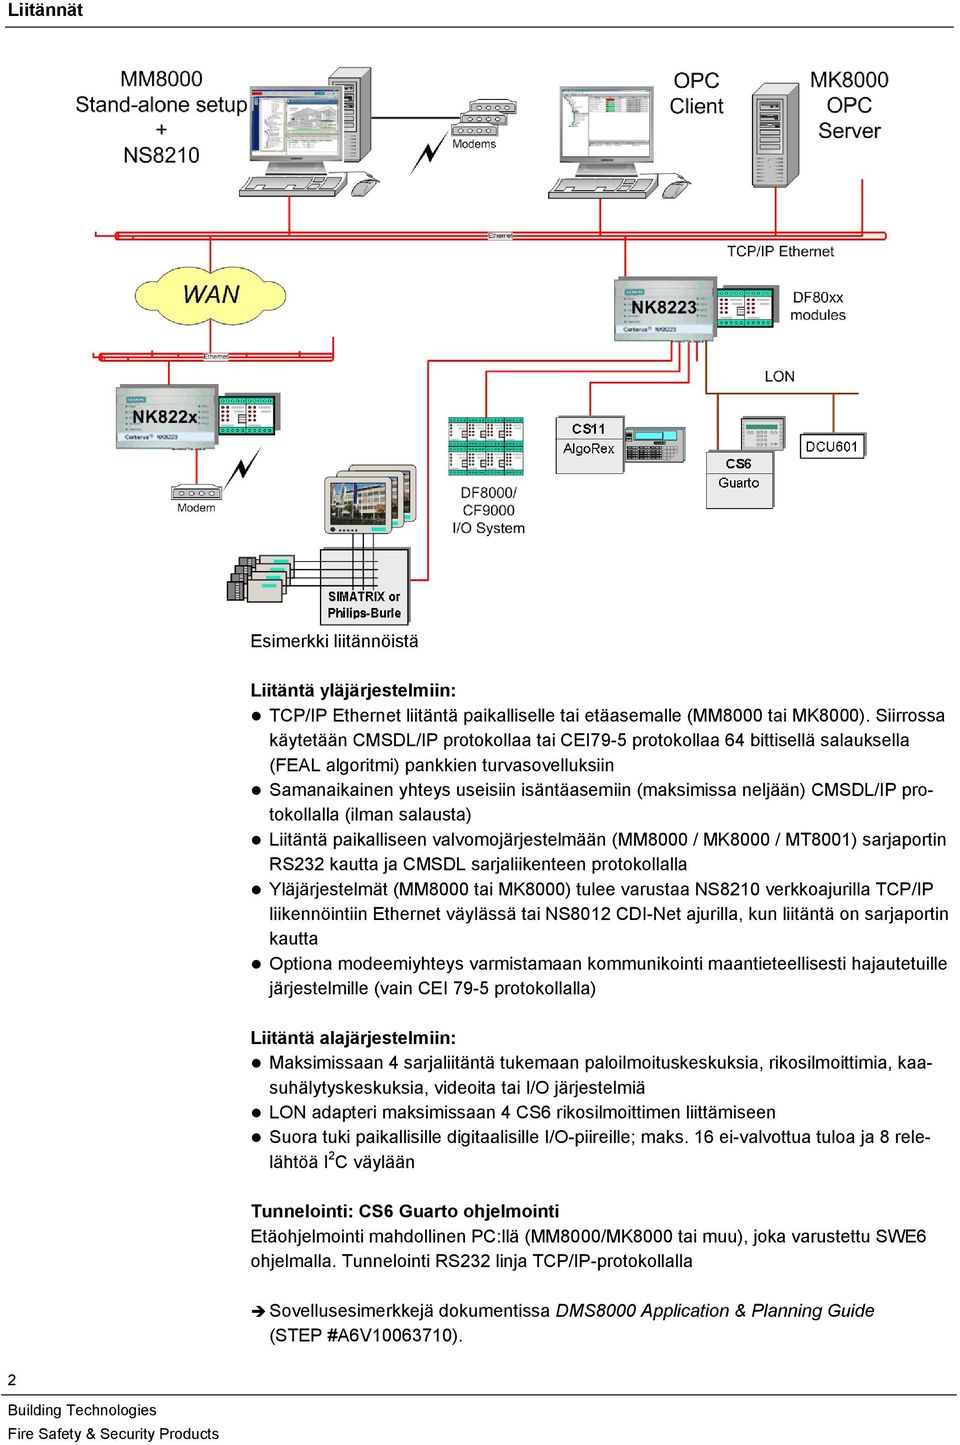 CMSDL/IP protokollalla (ilman salausta) Liitäntä paikalliseen valvomojärjestelmään (MM8000 / MK8000 / MT8001) sarjaportin RS3 kautta ja CMSDL sarjaliikenteen protokollalla Yläjärjestelmät (MM8000 tai